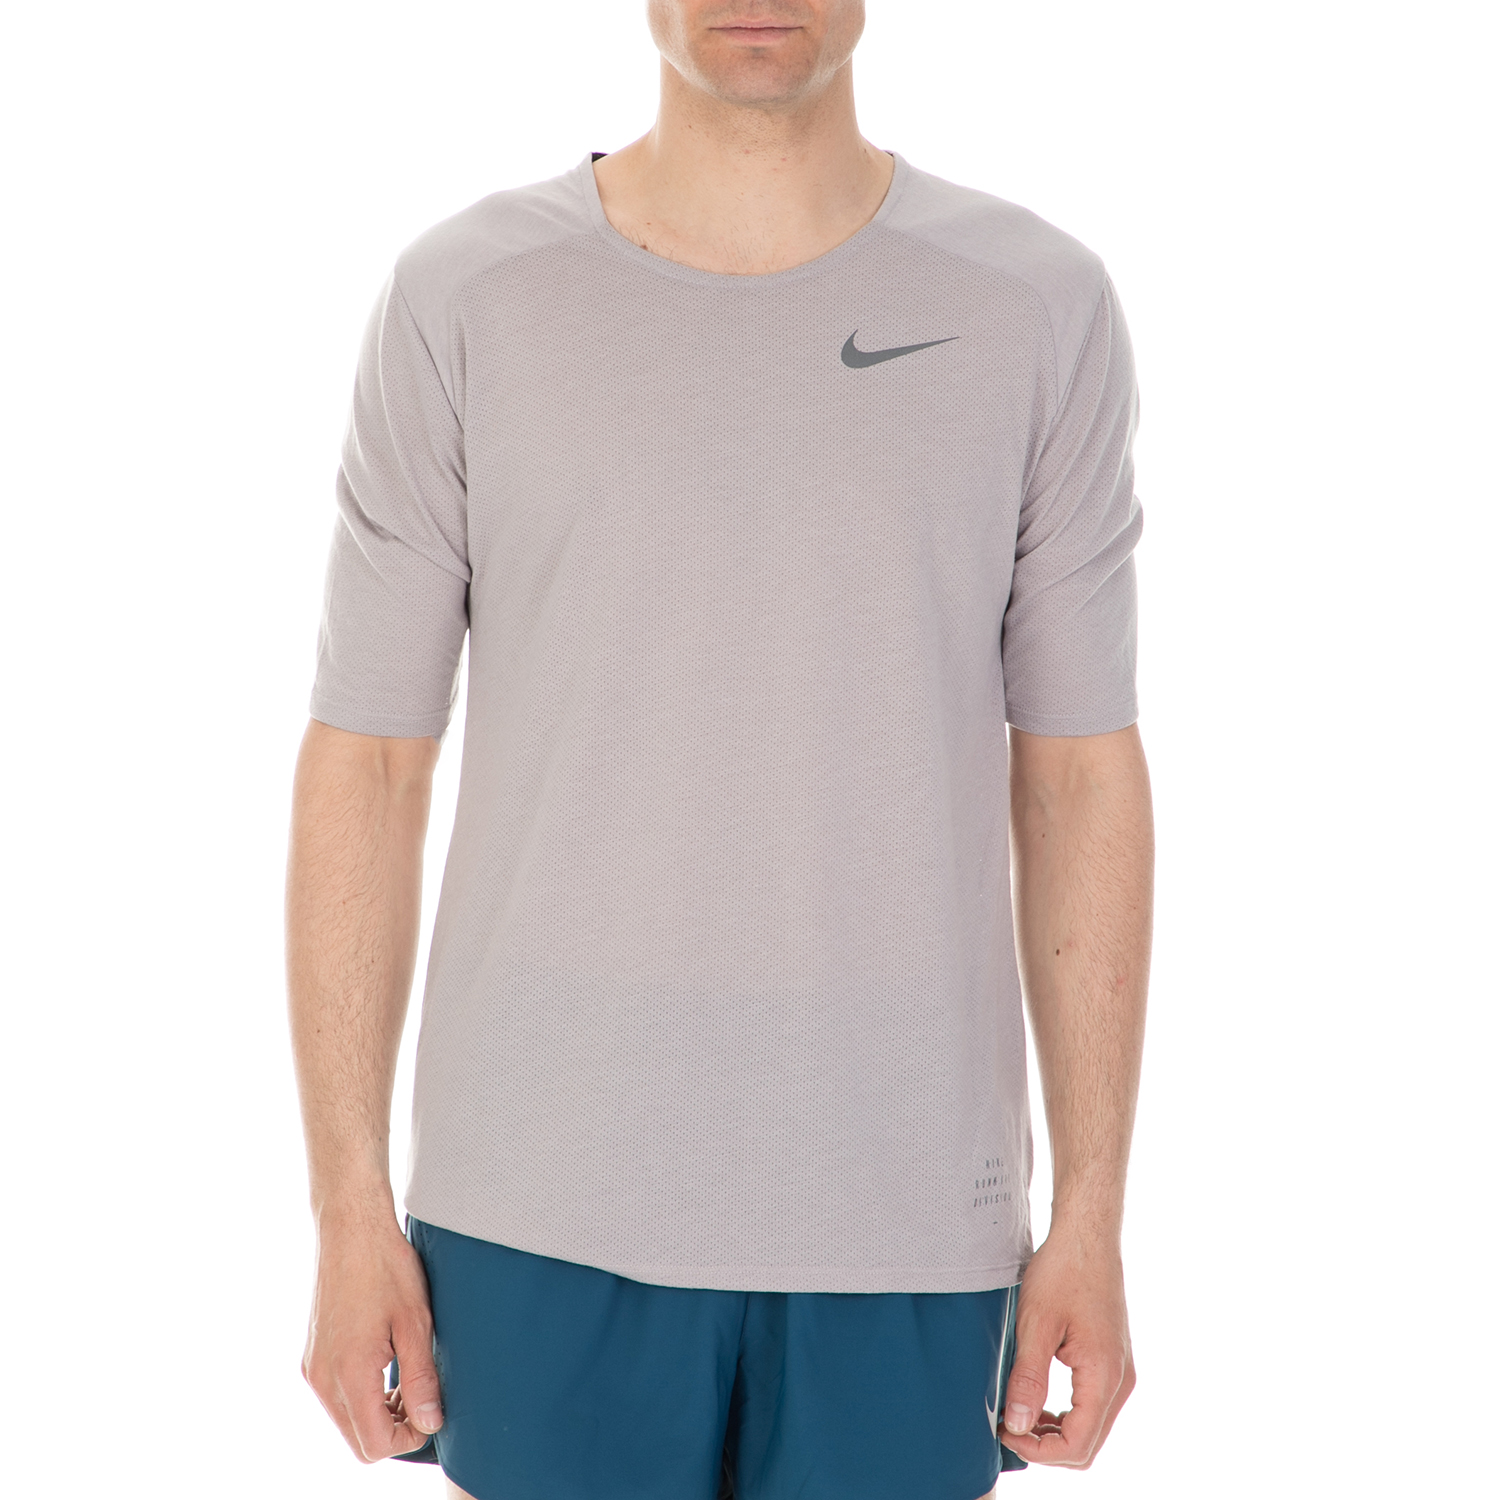 Ανδρικά/Ρούχα/Αθλητικά/T-shirt NIKE - Ανδρική κοντομάνικη μπλούζα NIKE BRTHE TLWND γκρι